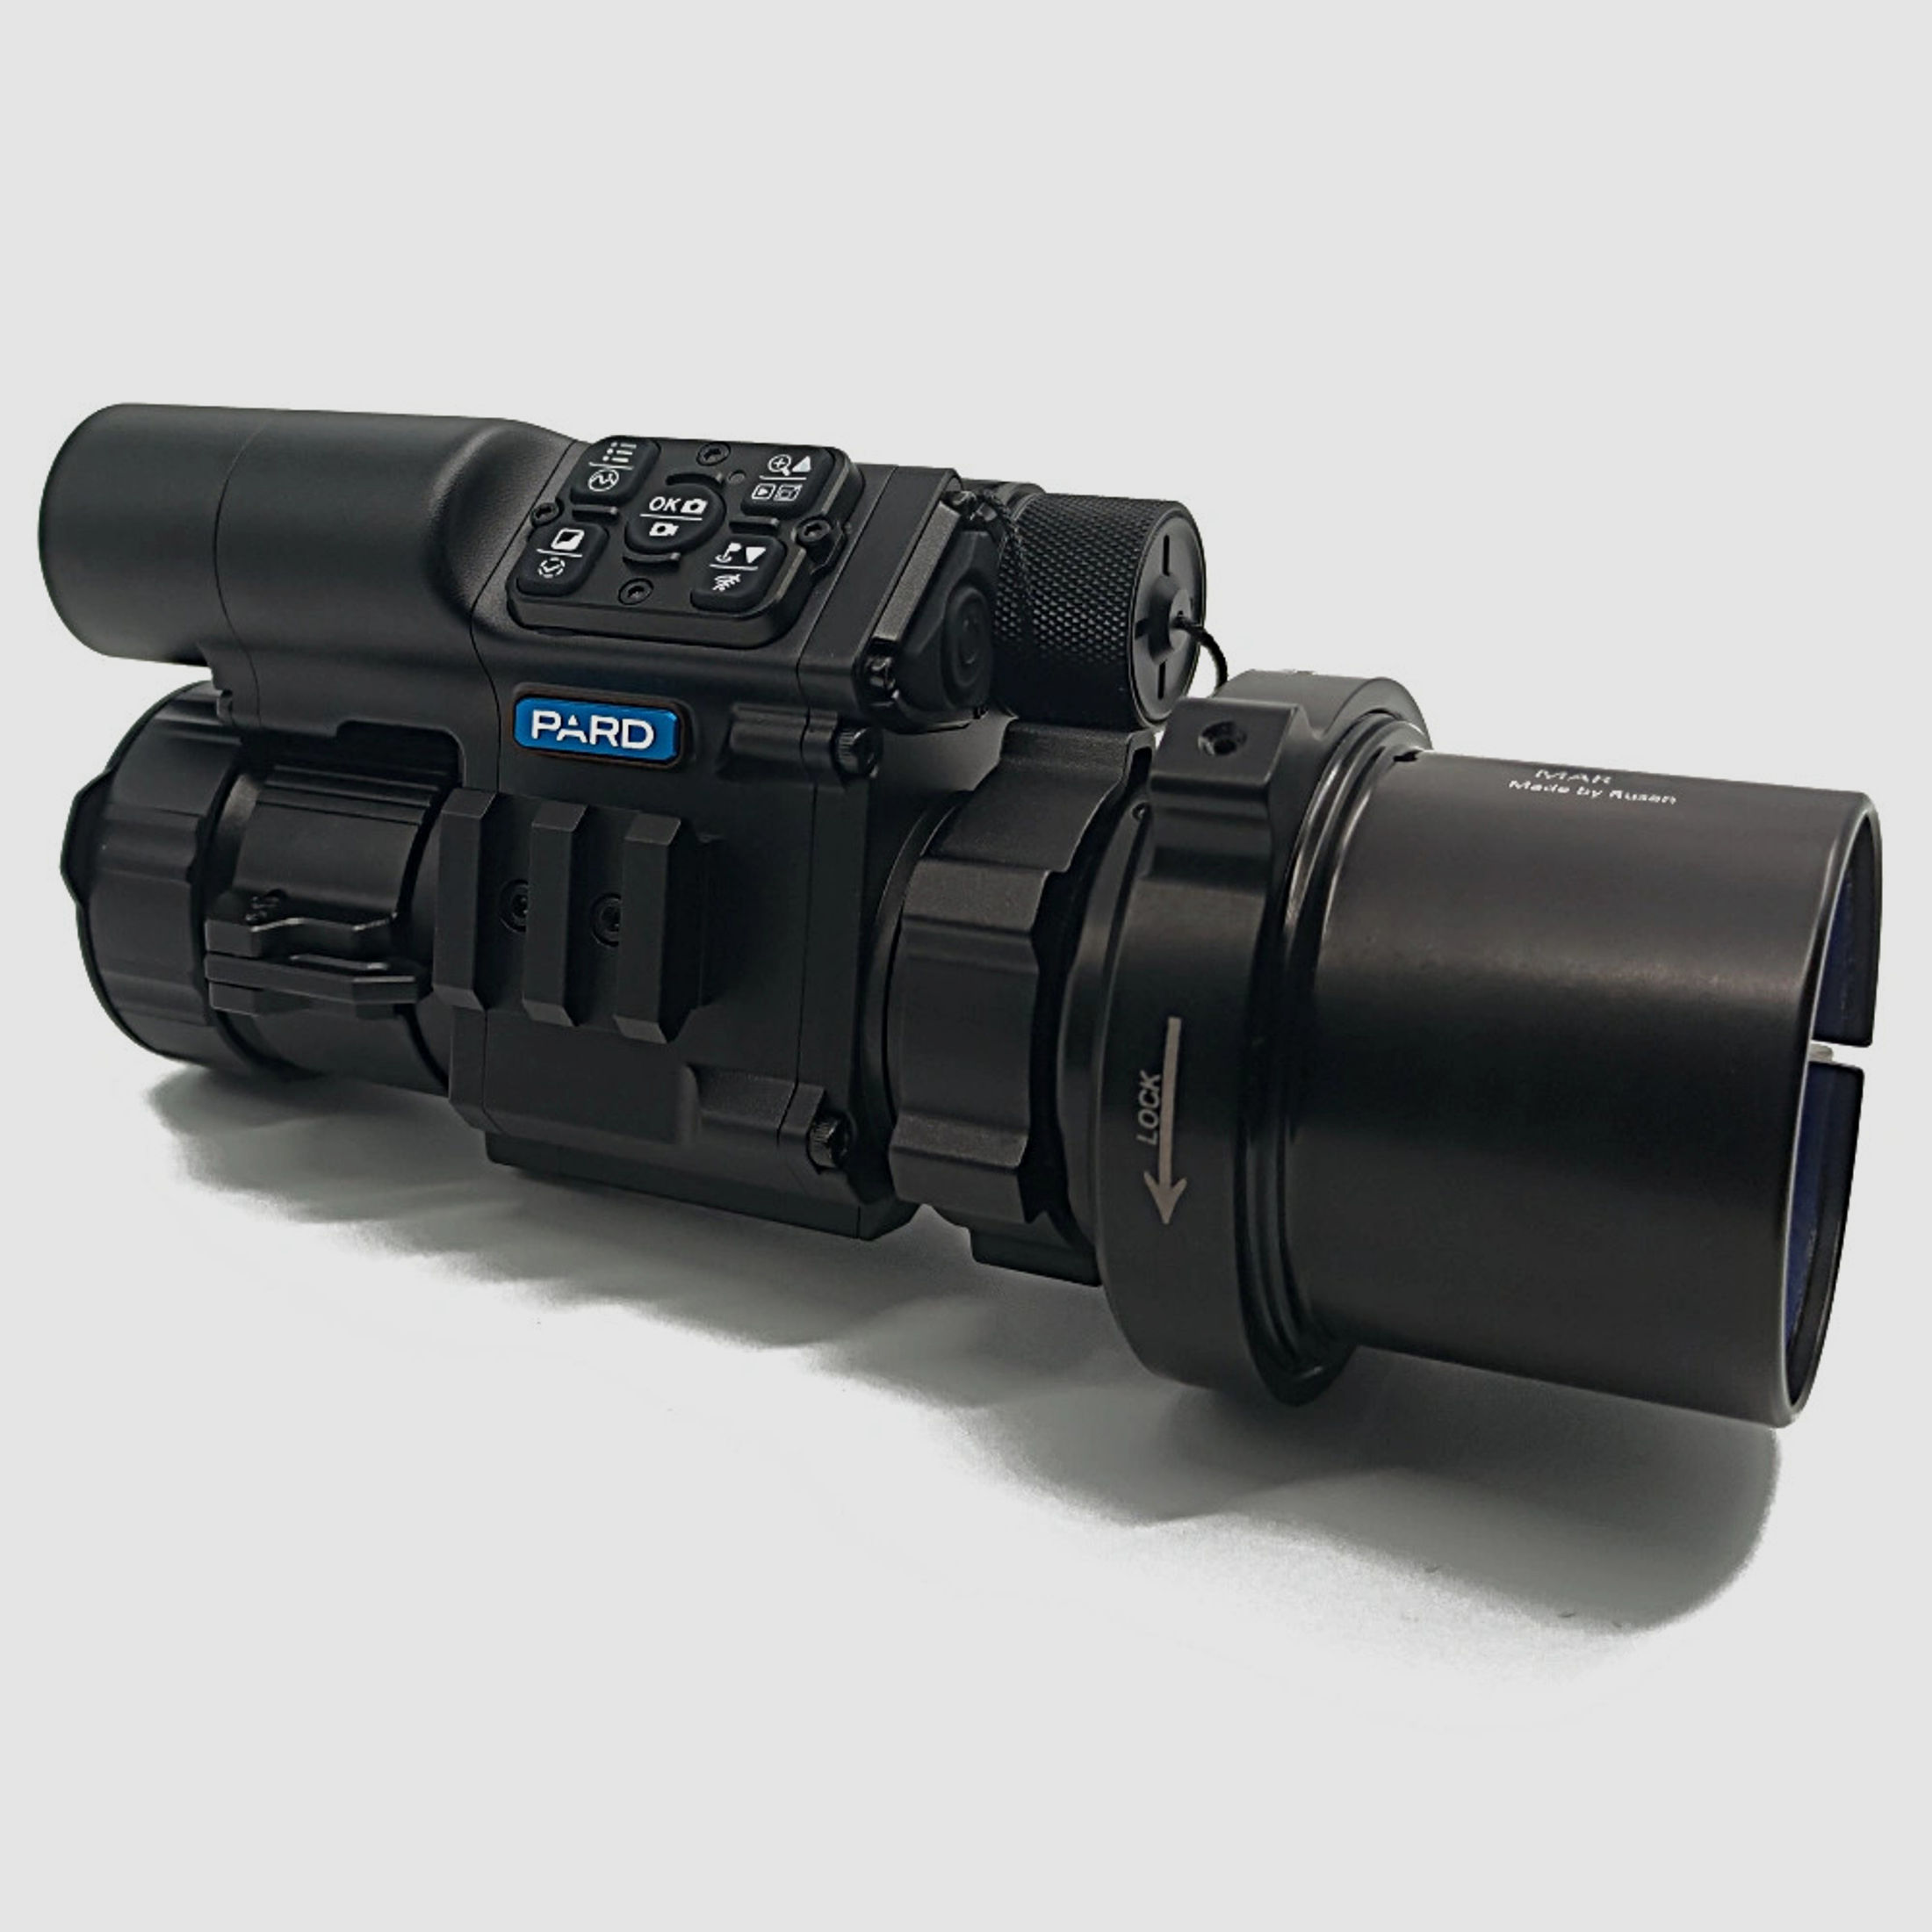 PARD FD1 Nachtsicht 3 in 1 Vorsatz, Monokular & Zielfernrohr - 940 nm mit LRF 67 mm RUSAN MAR + RUSAN MCR